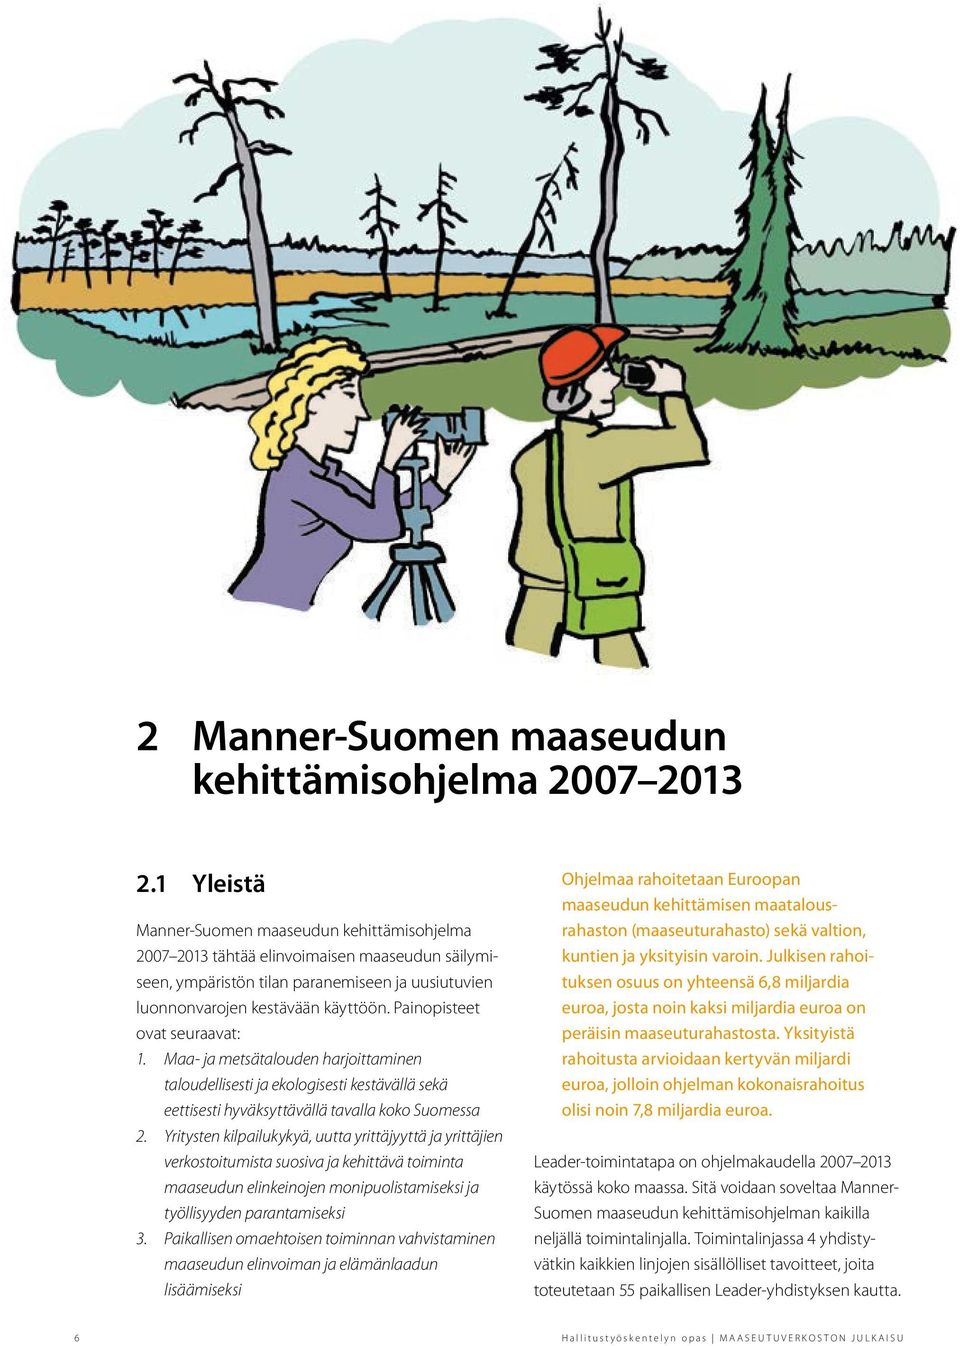 Painopisteet ovat seuraavat: 1. Maa- ja metsätalouden harjoittaminen taloudellisesti ja ekologisesti kestävällä sekä eettisesti hyväksyttävällä tavalla koko Suomessa 2.